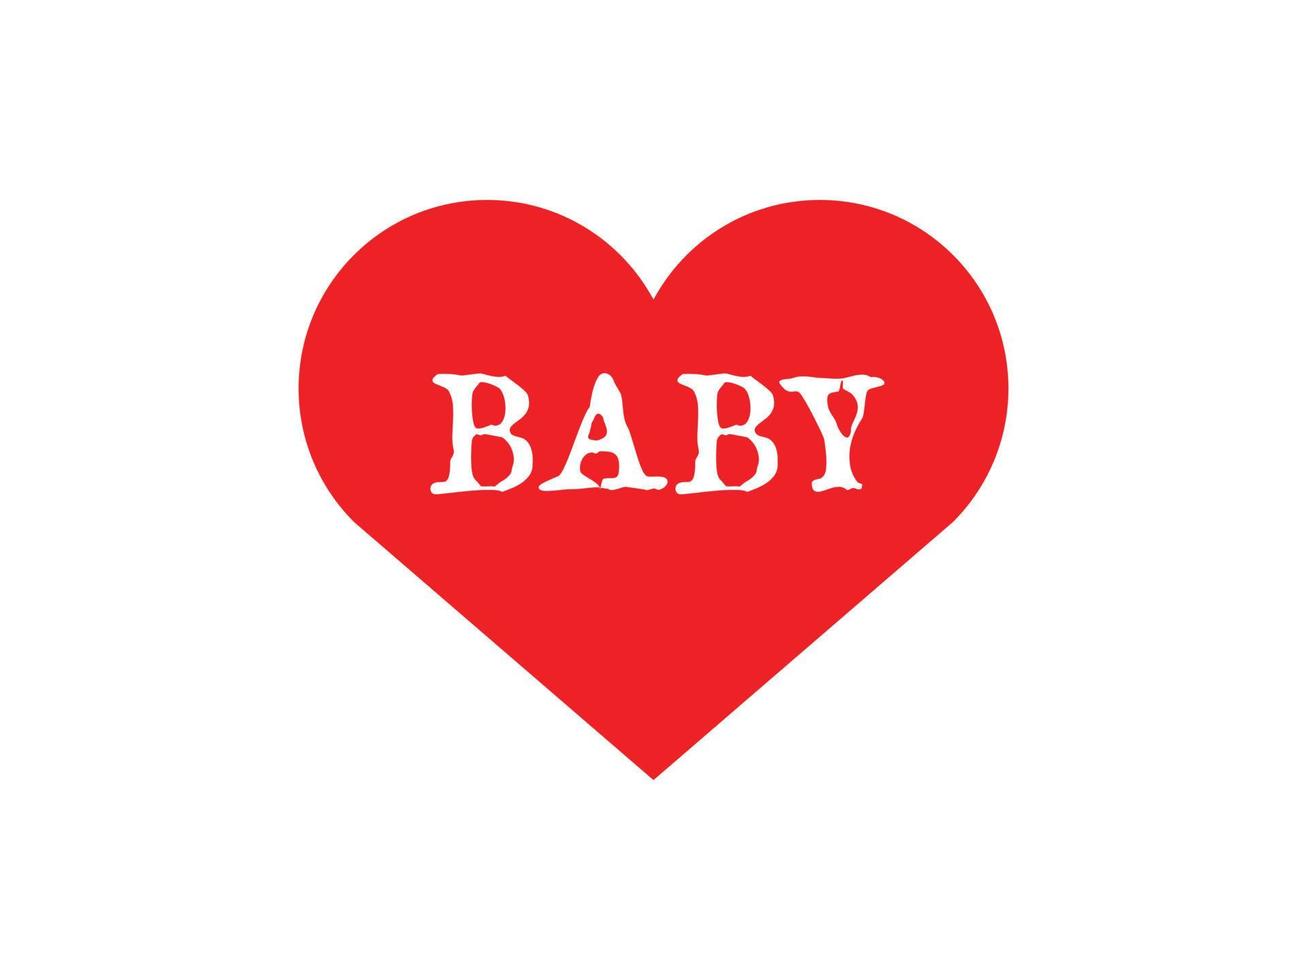 Babytypografie in roter Herzform auf weißem Hintergrund vektor